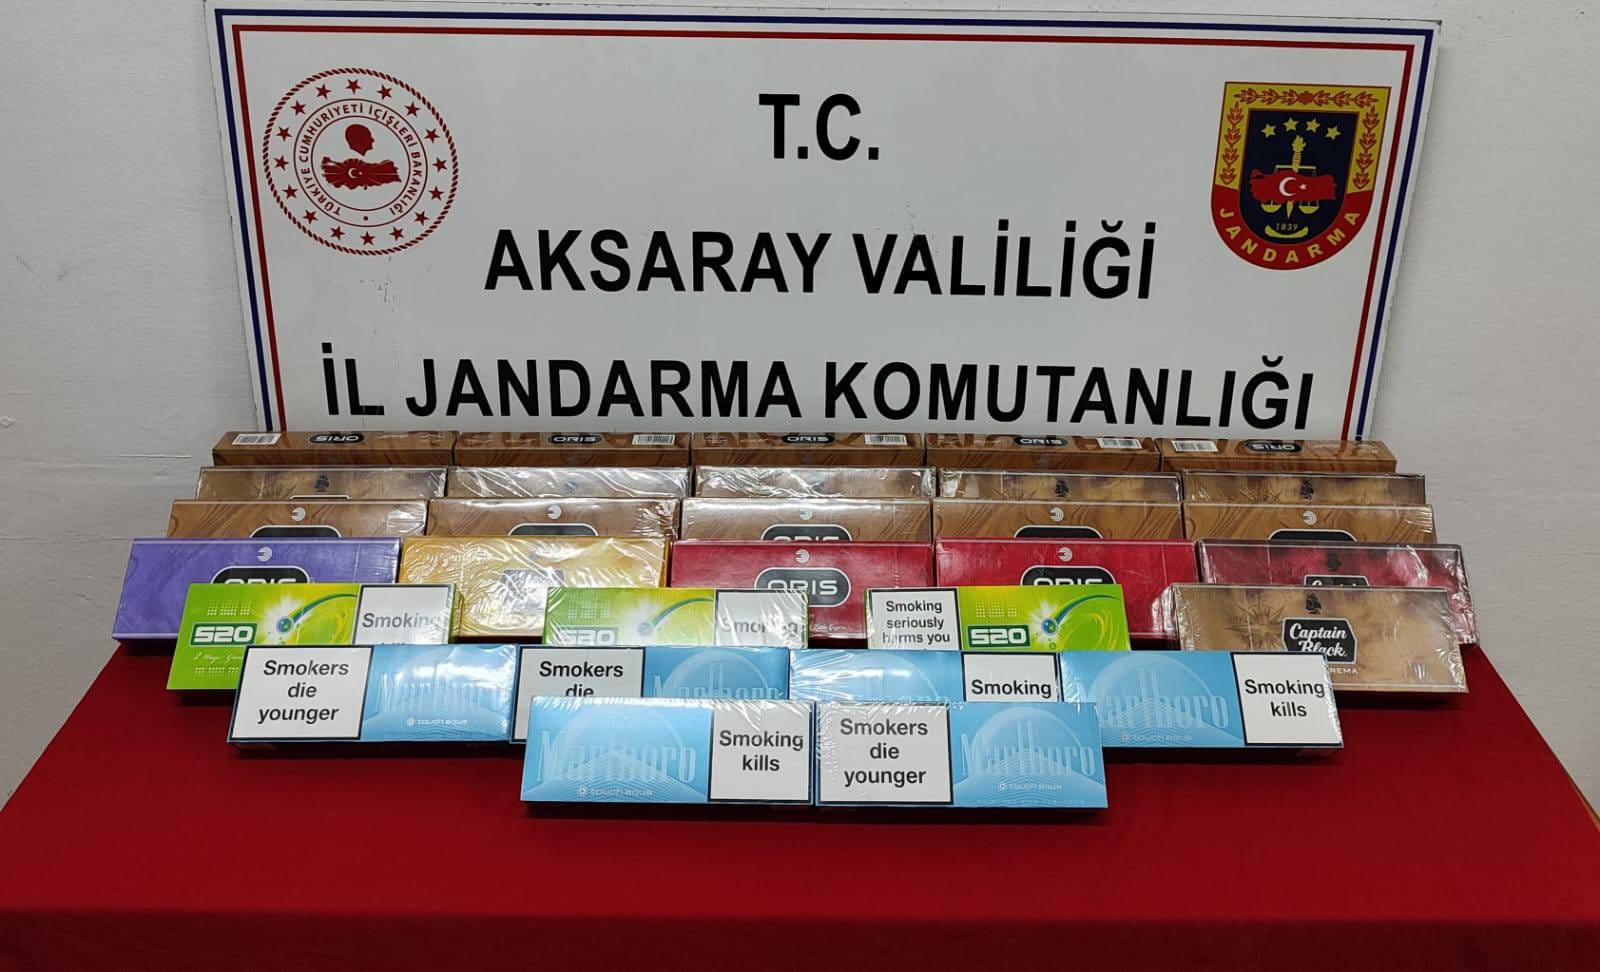 Aksaray’da kaçak sigara operasyonu: Yolcu otobüsünde 300 paket ele geçirildi!